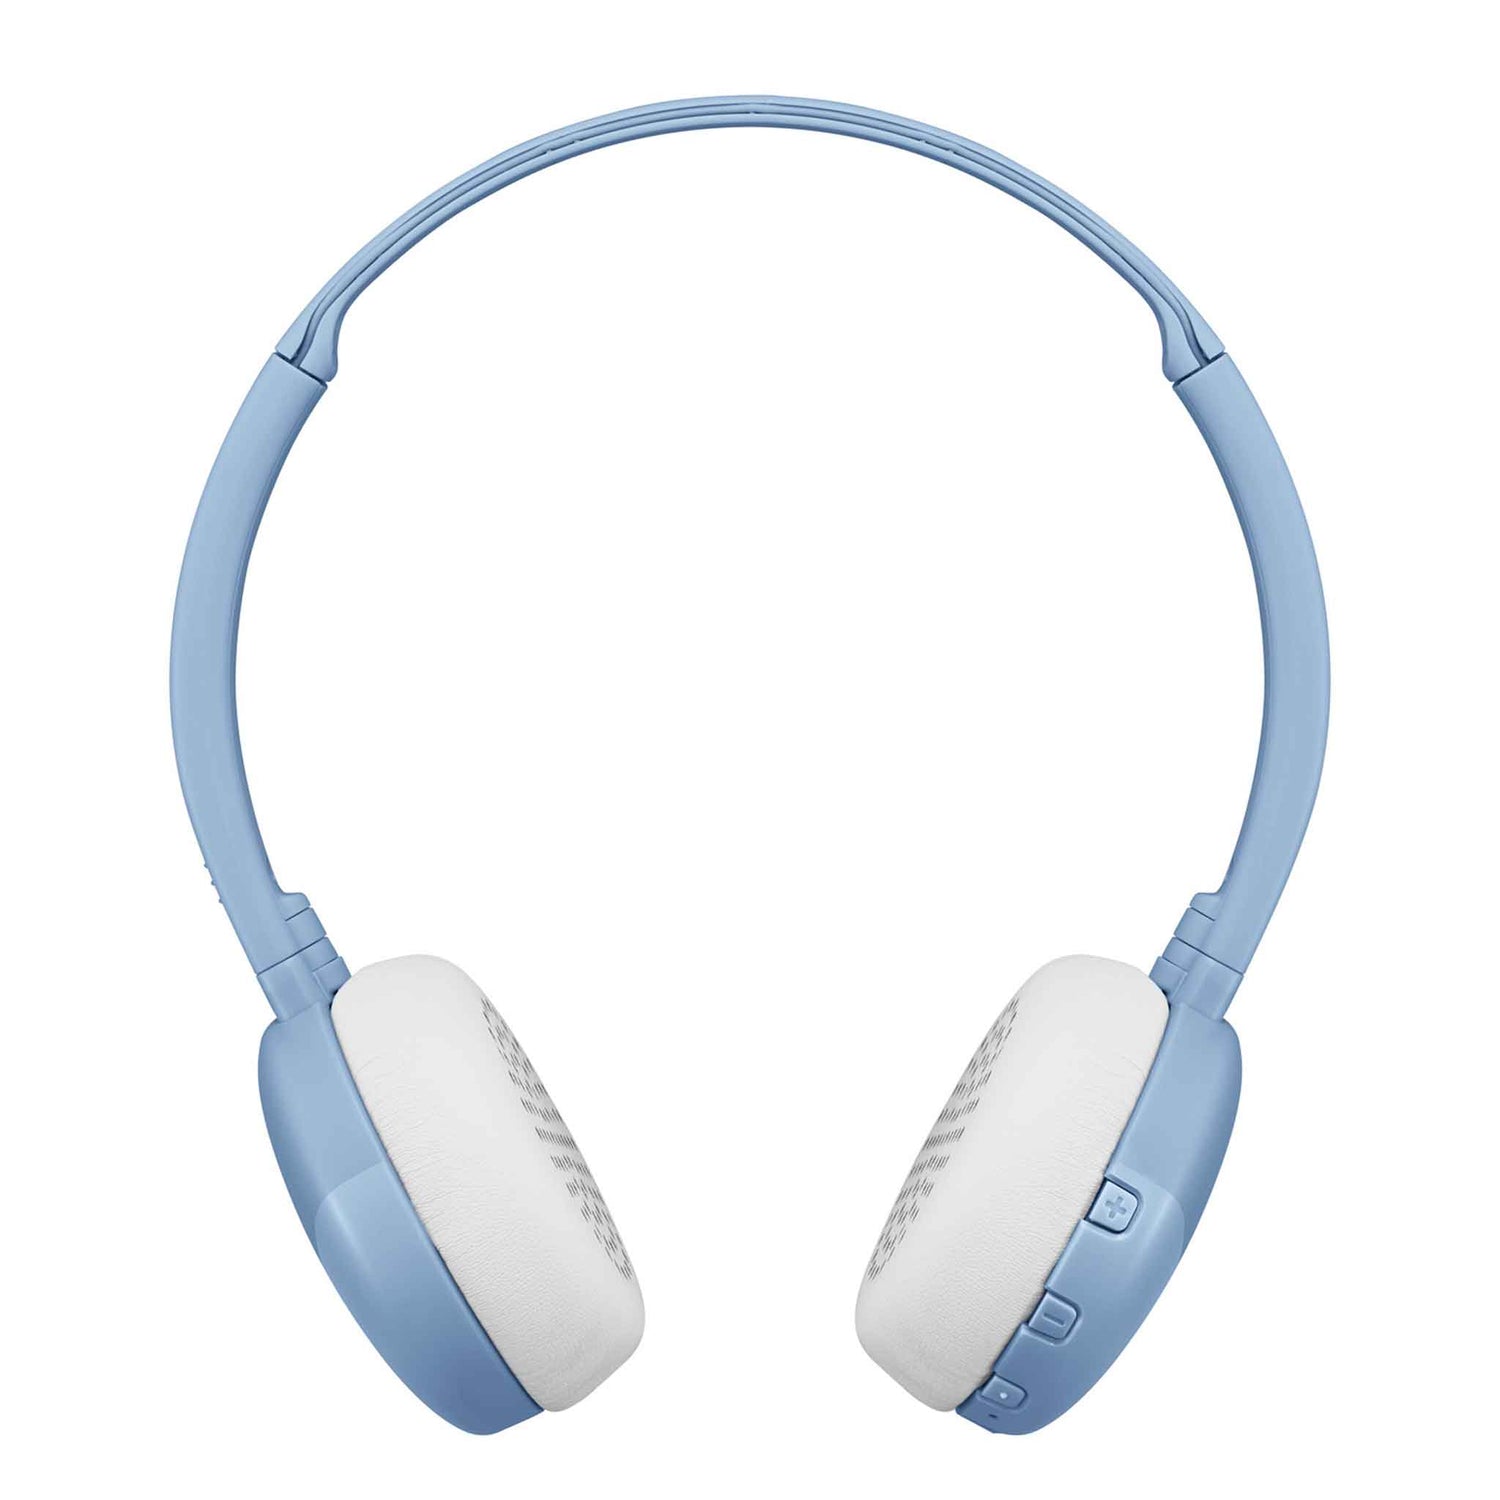 HA-S22W in Blue Bluetooth Wireless Headphones side view